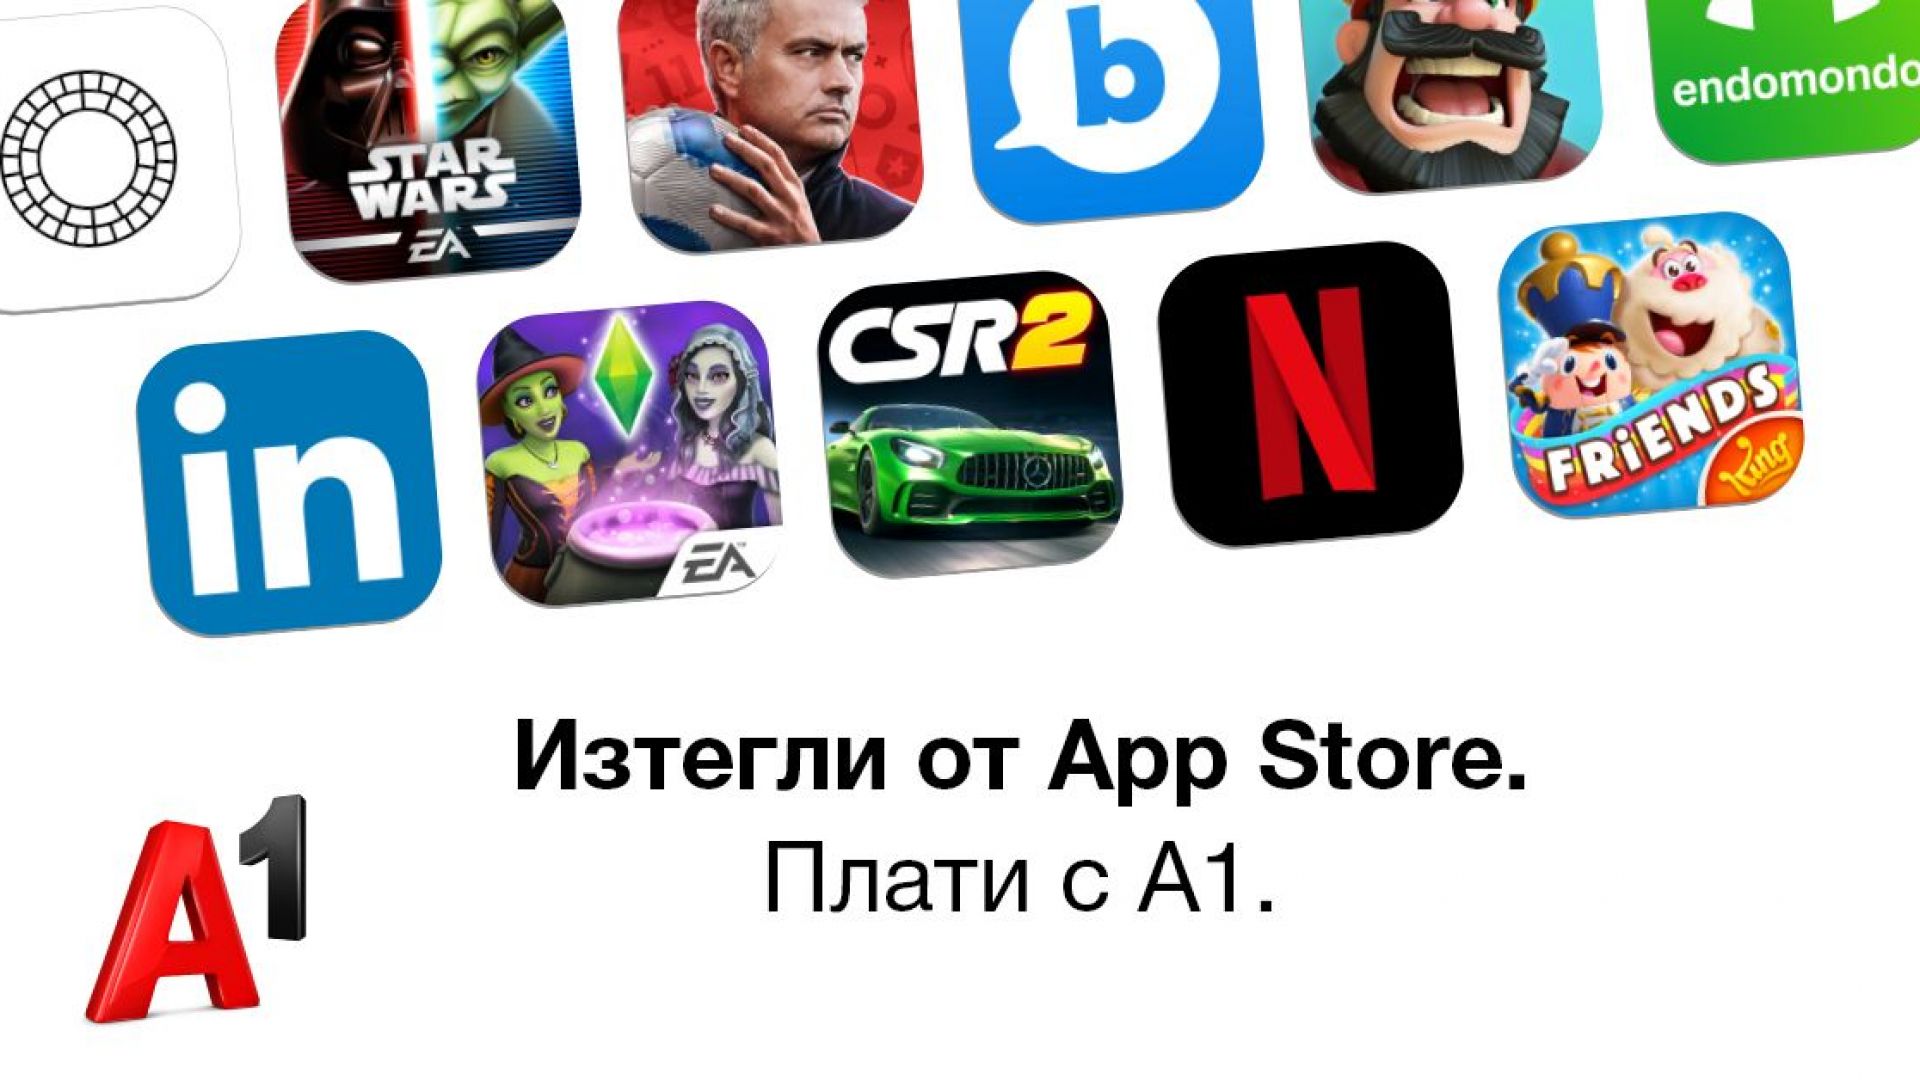 Клиентите на А1 вече могат да заплащат покупки от App Store и iTunes с месечната си фактура